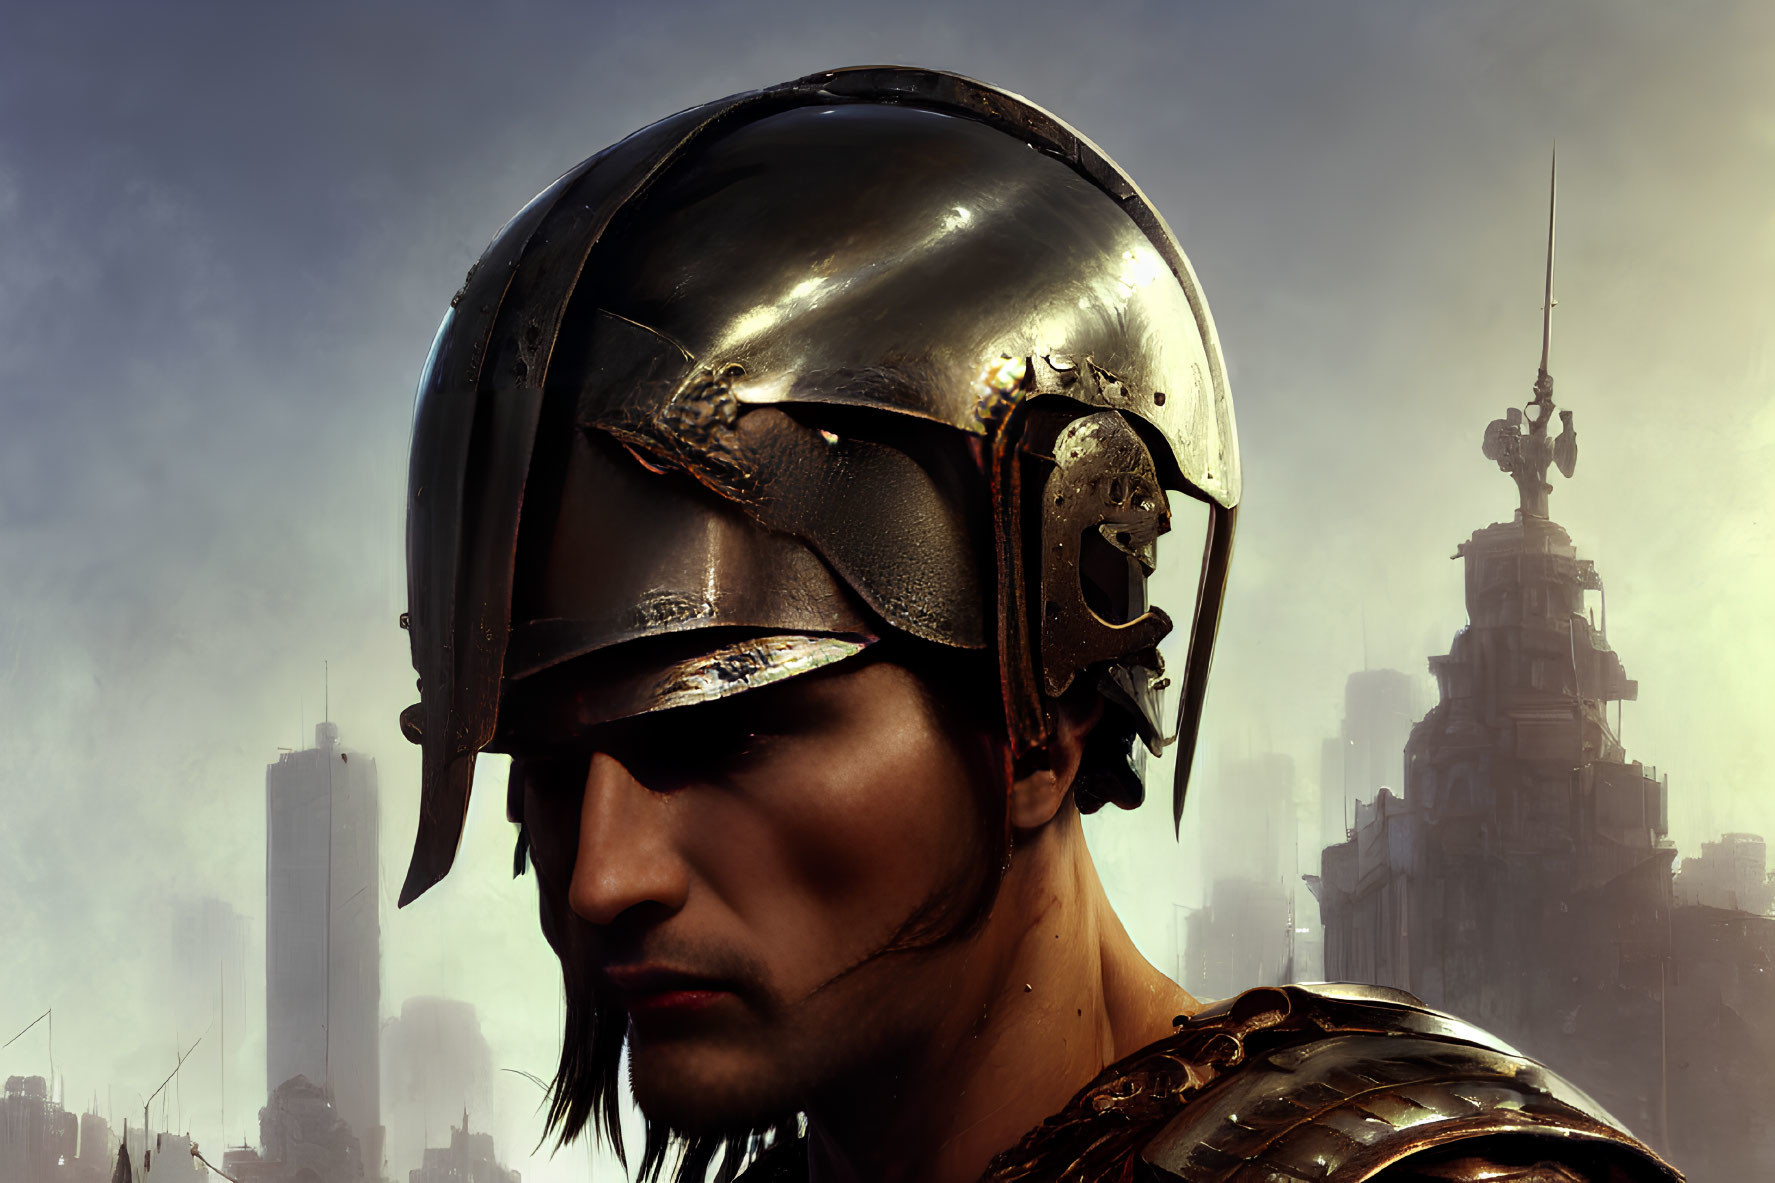 Ancient warrior in metallic helmet against futuristic cityscape